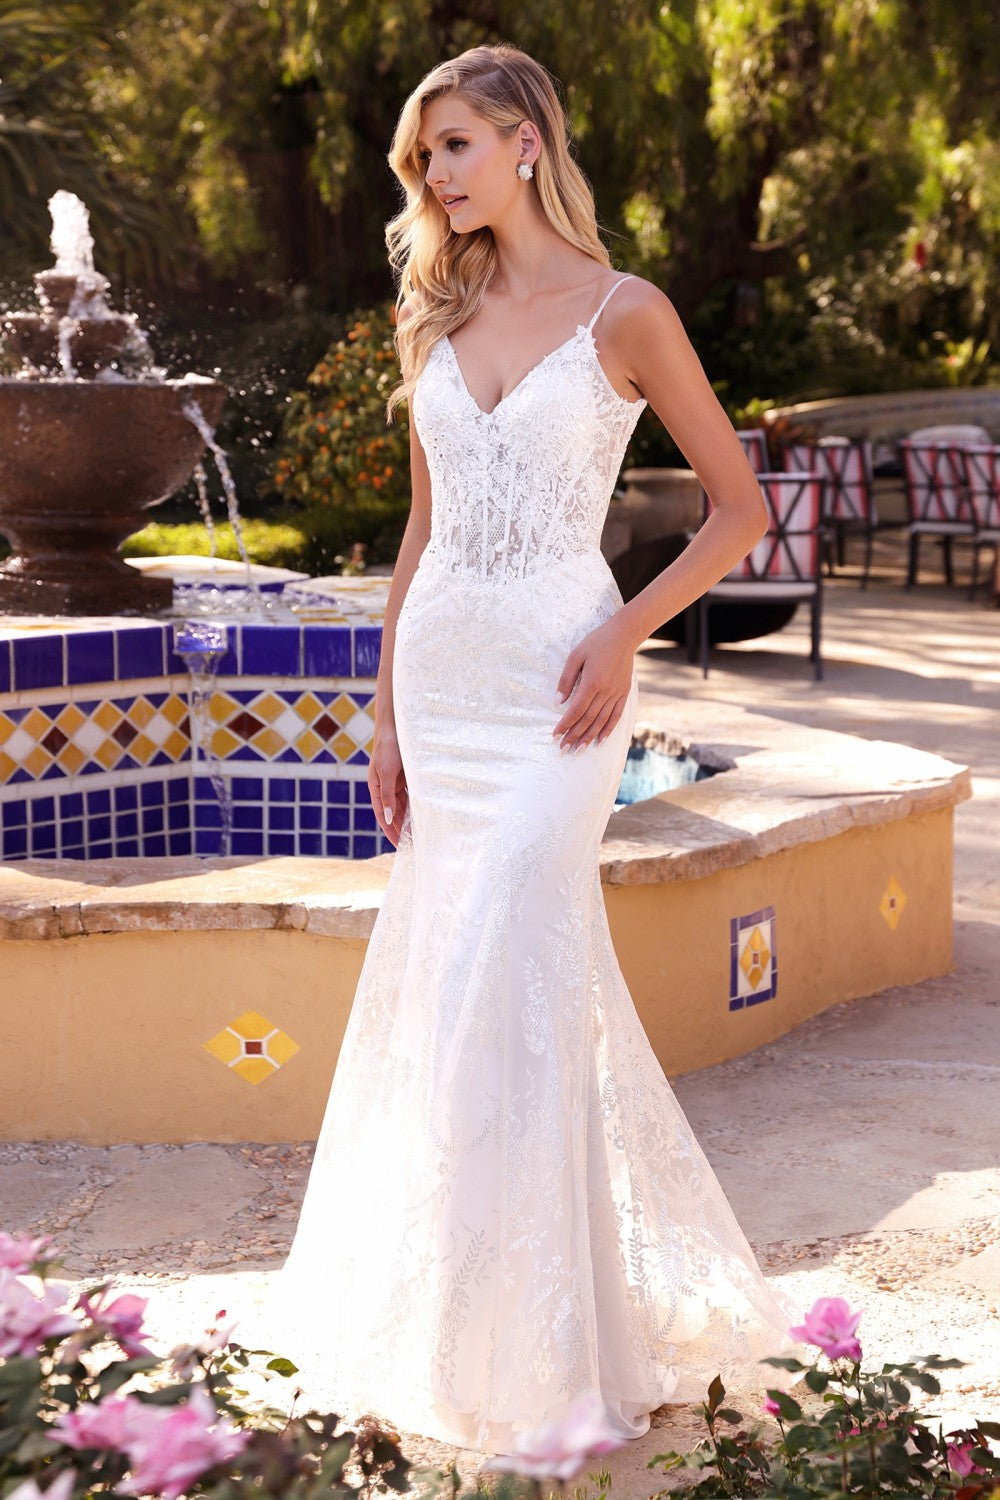 Regal Sparkling Mermaid Wedding Dress 740825TIR SAMPLE IN STORE